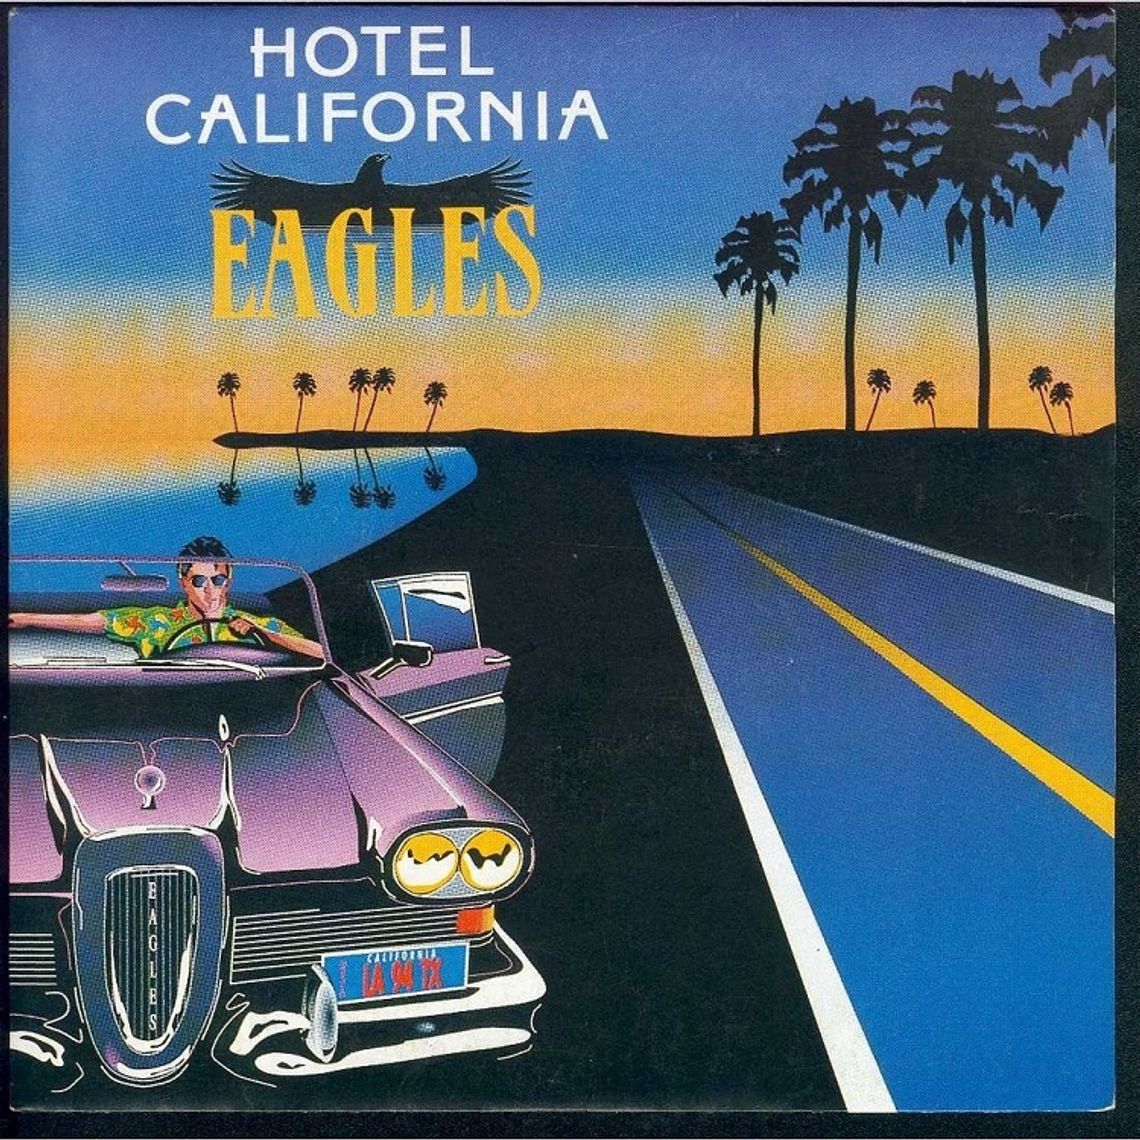 THE EAGLES "Hotel California"